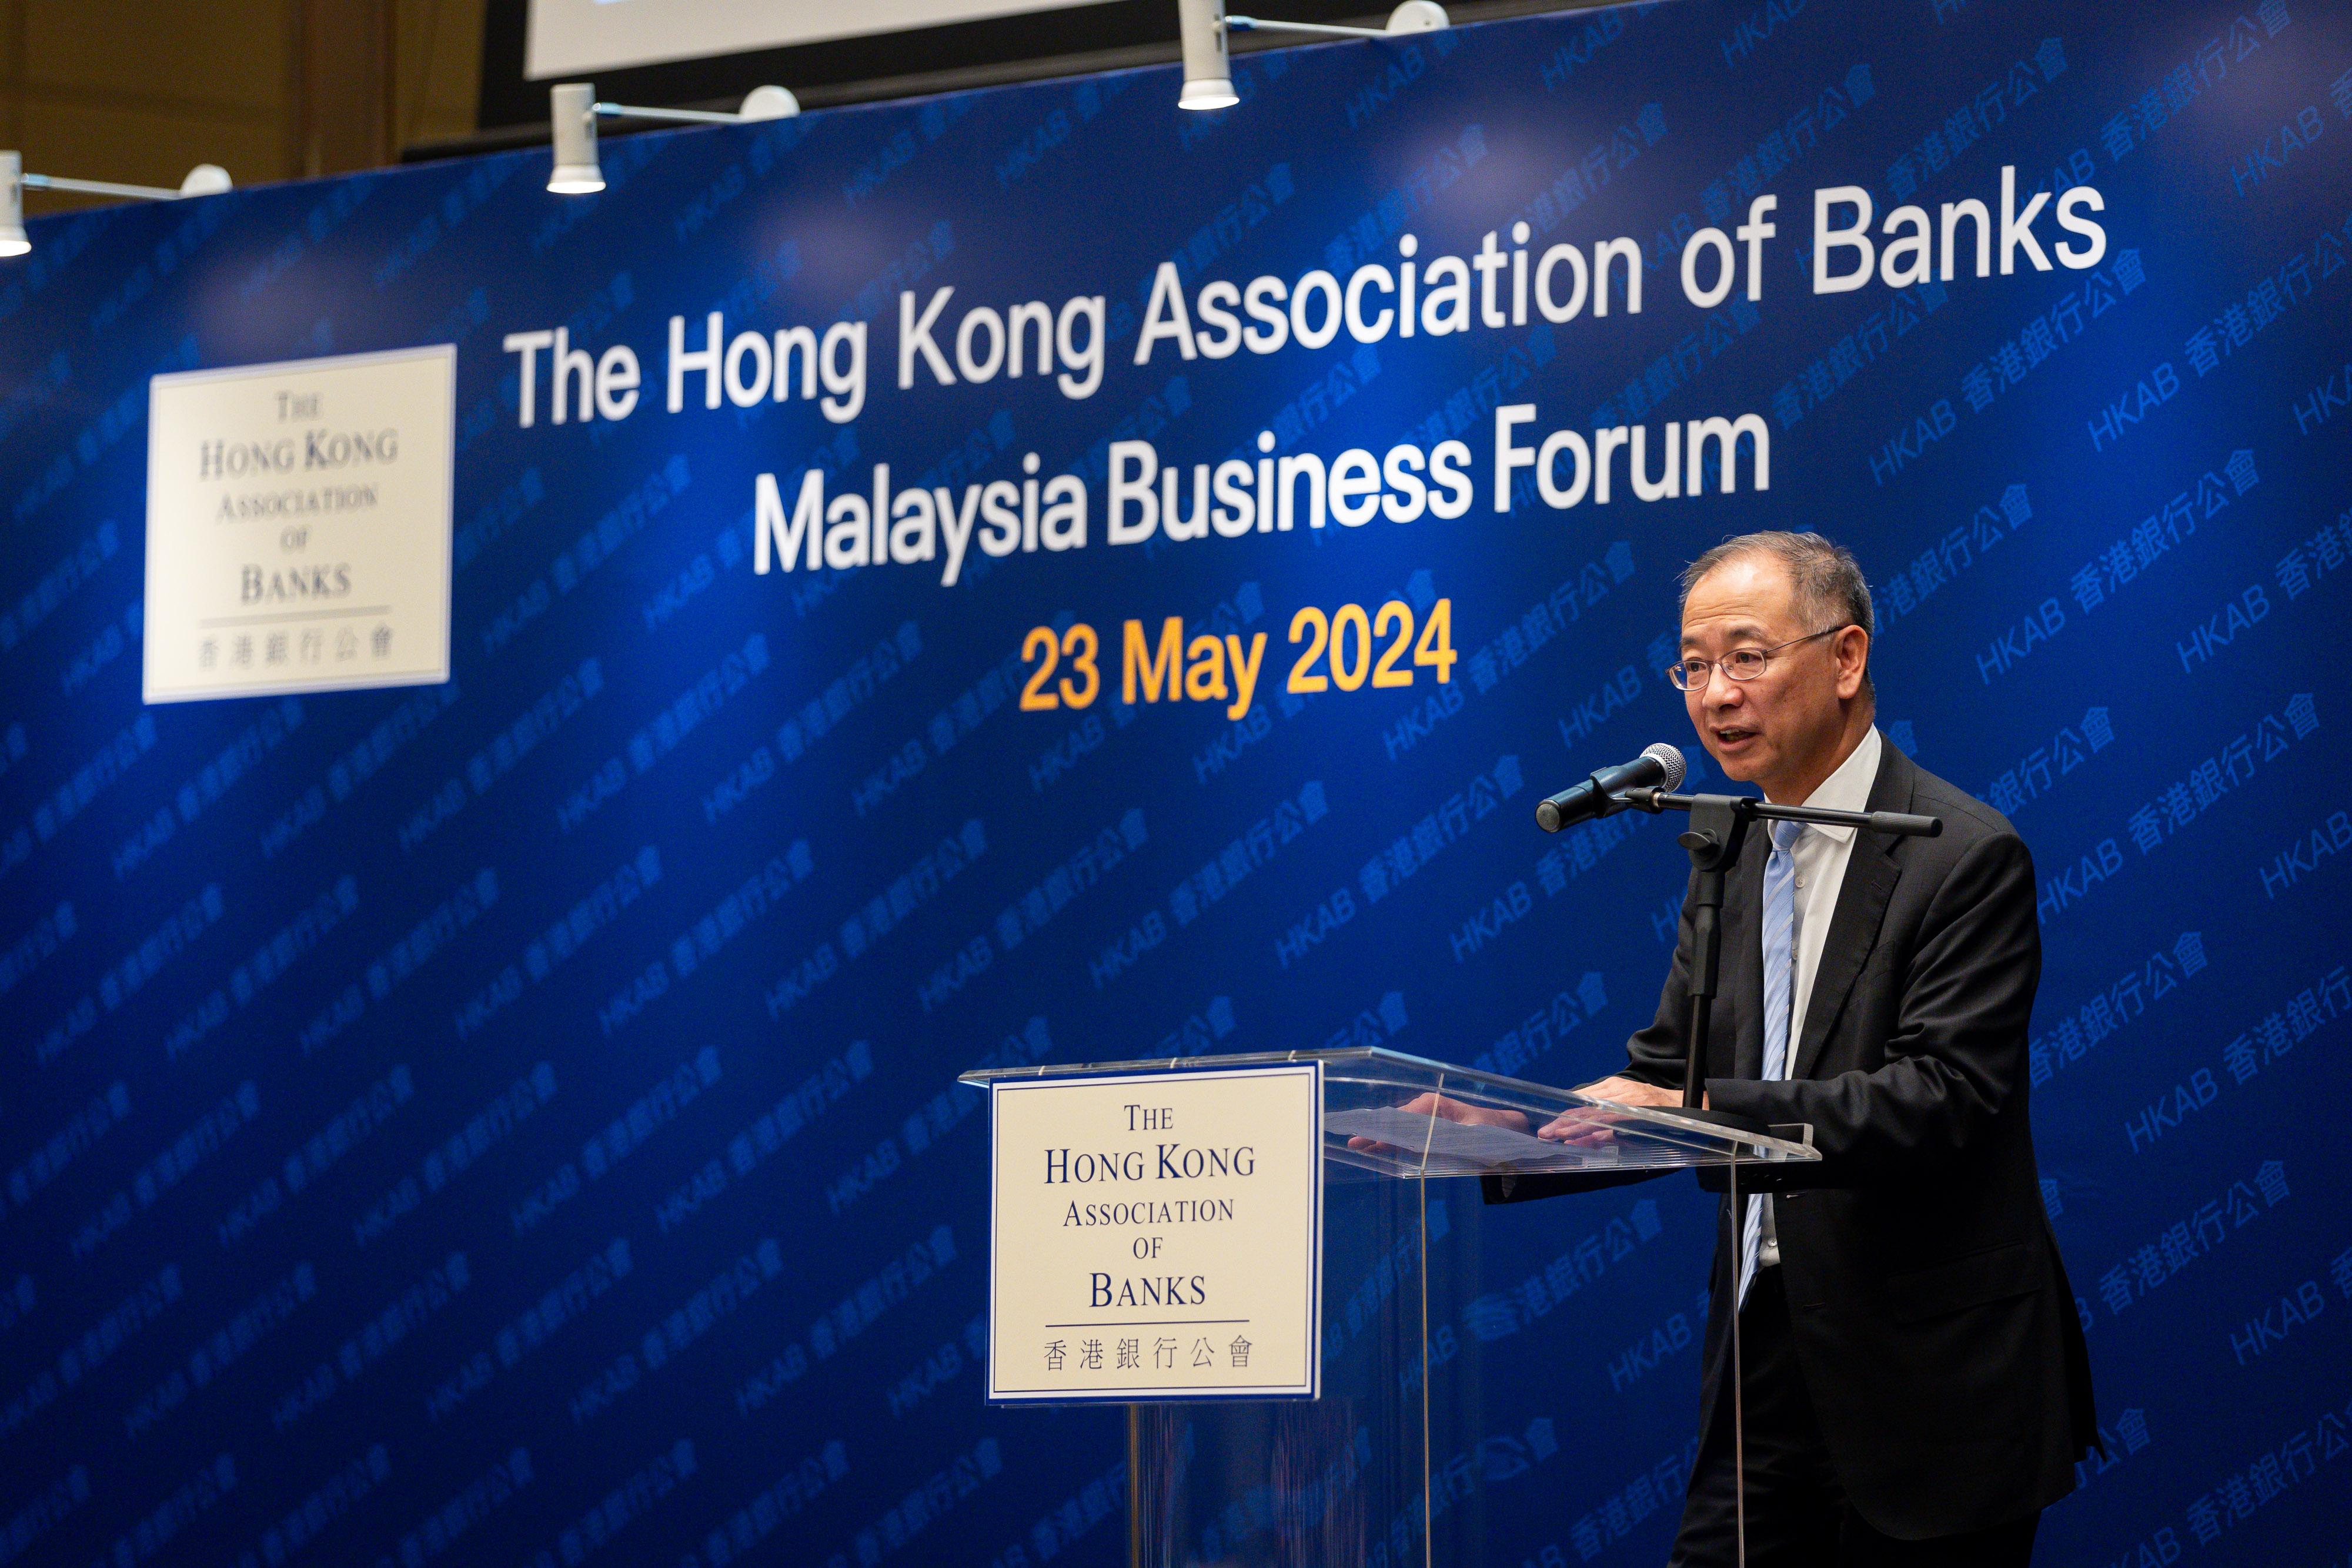 香港金融管理局总裁余伟文于五月二十三日在吉隆坡的马来西亚商务论坛上发表主旨演讲。